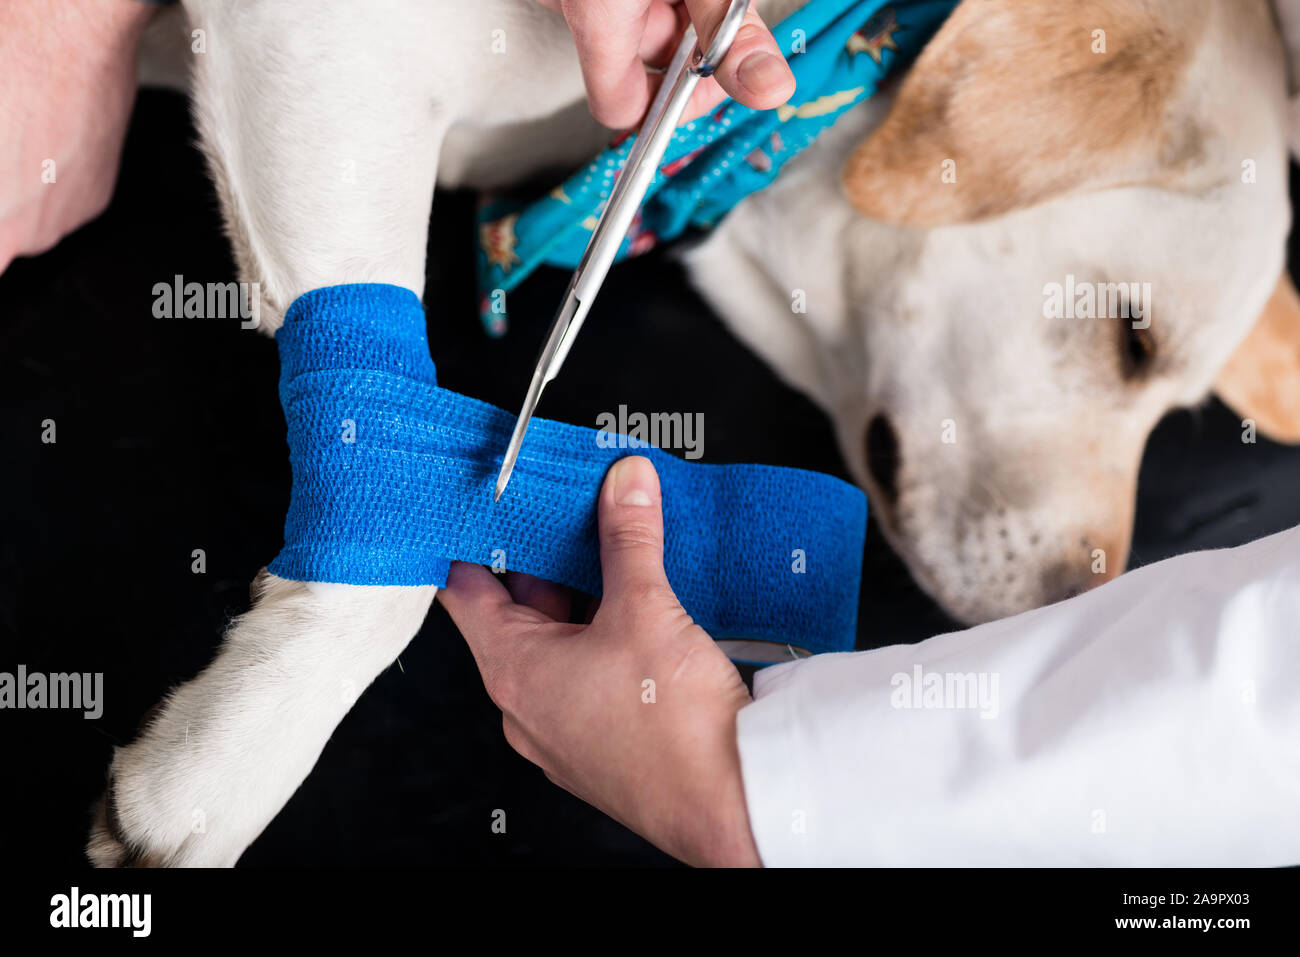 Hund, Verband nach Verletzungen auf seinem Bein - Alamy